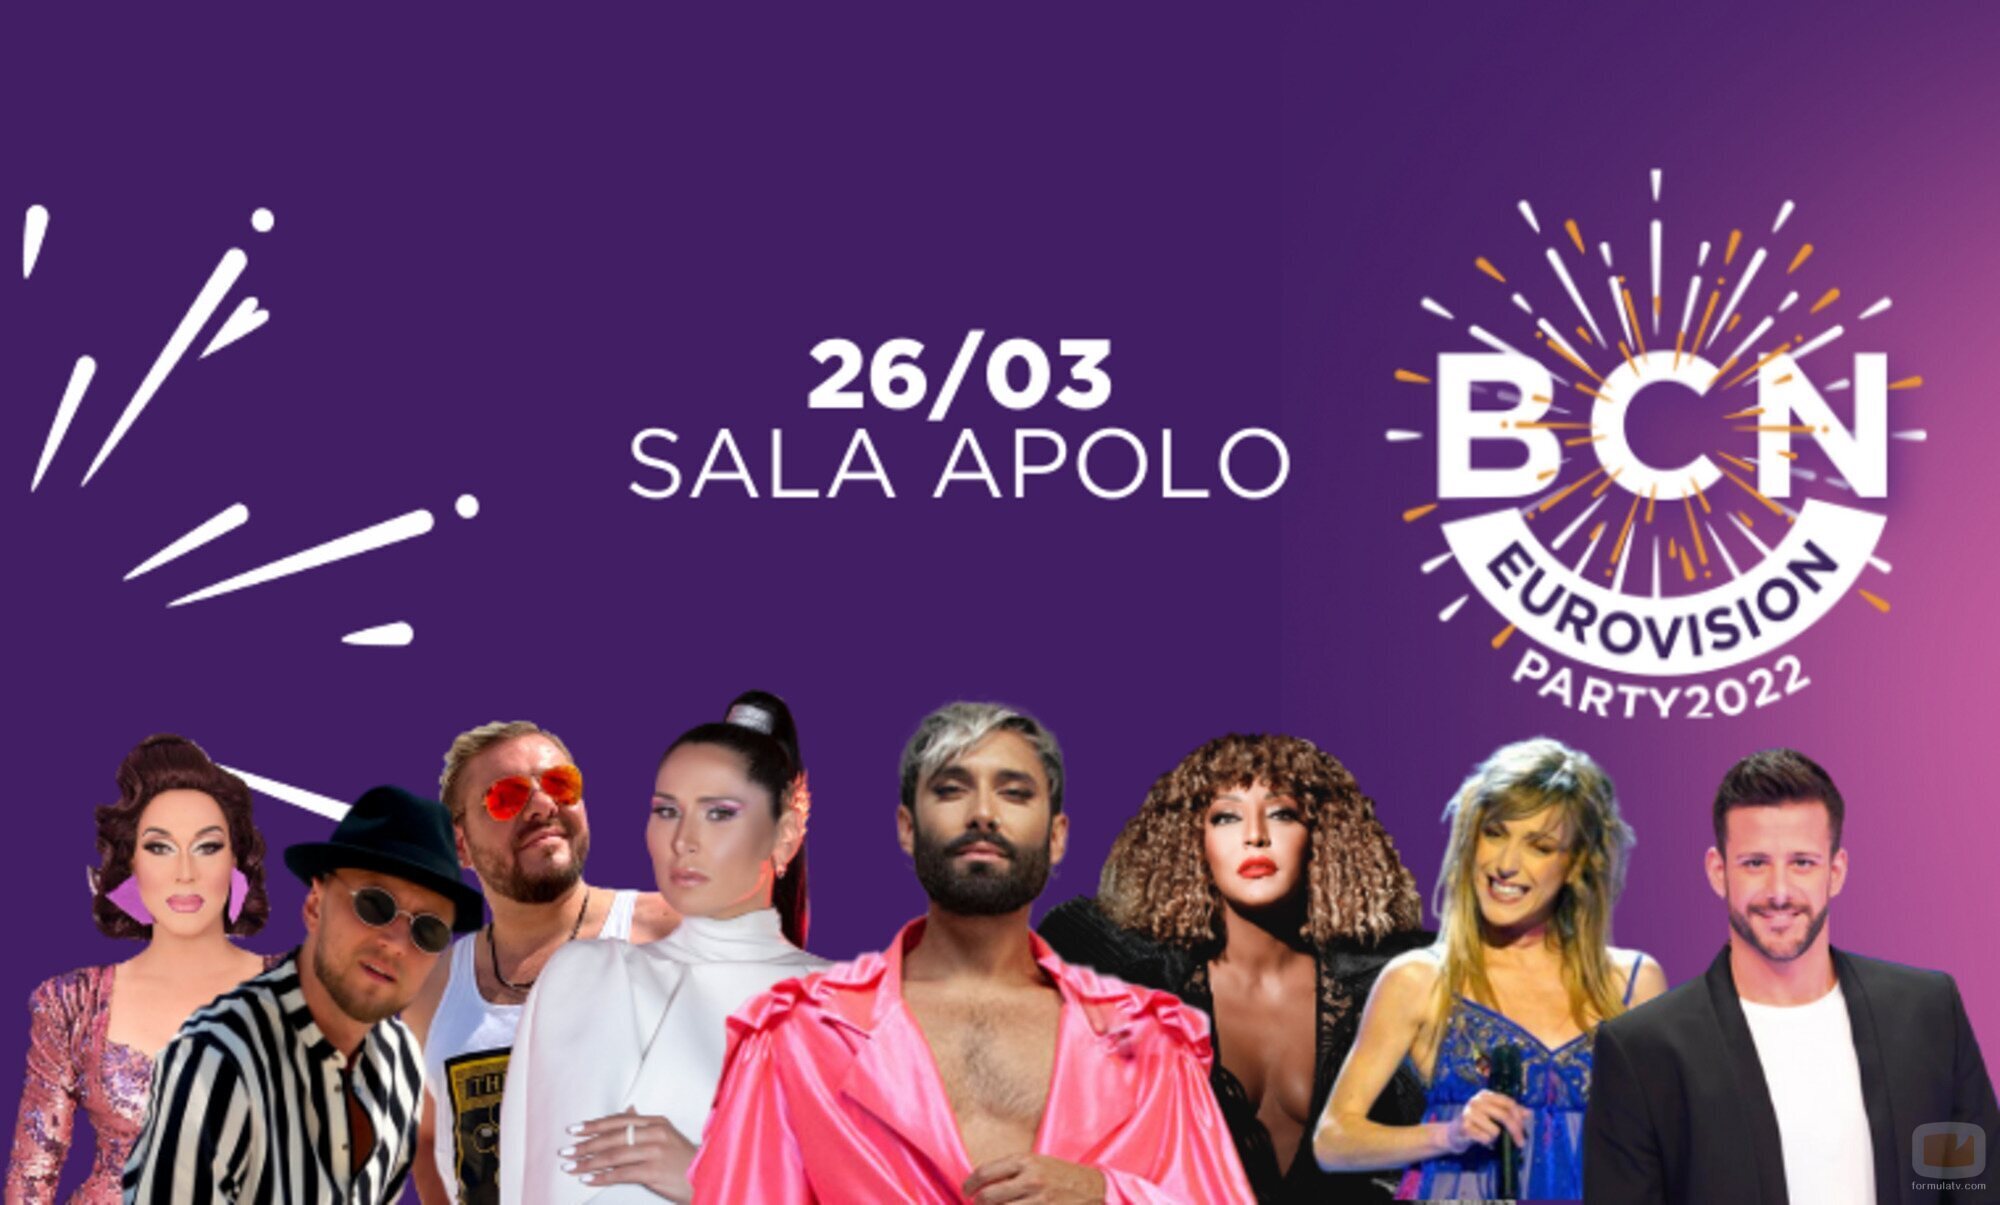 Cartel promocional de la Eurovisión Party de Barcelona 2022